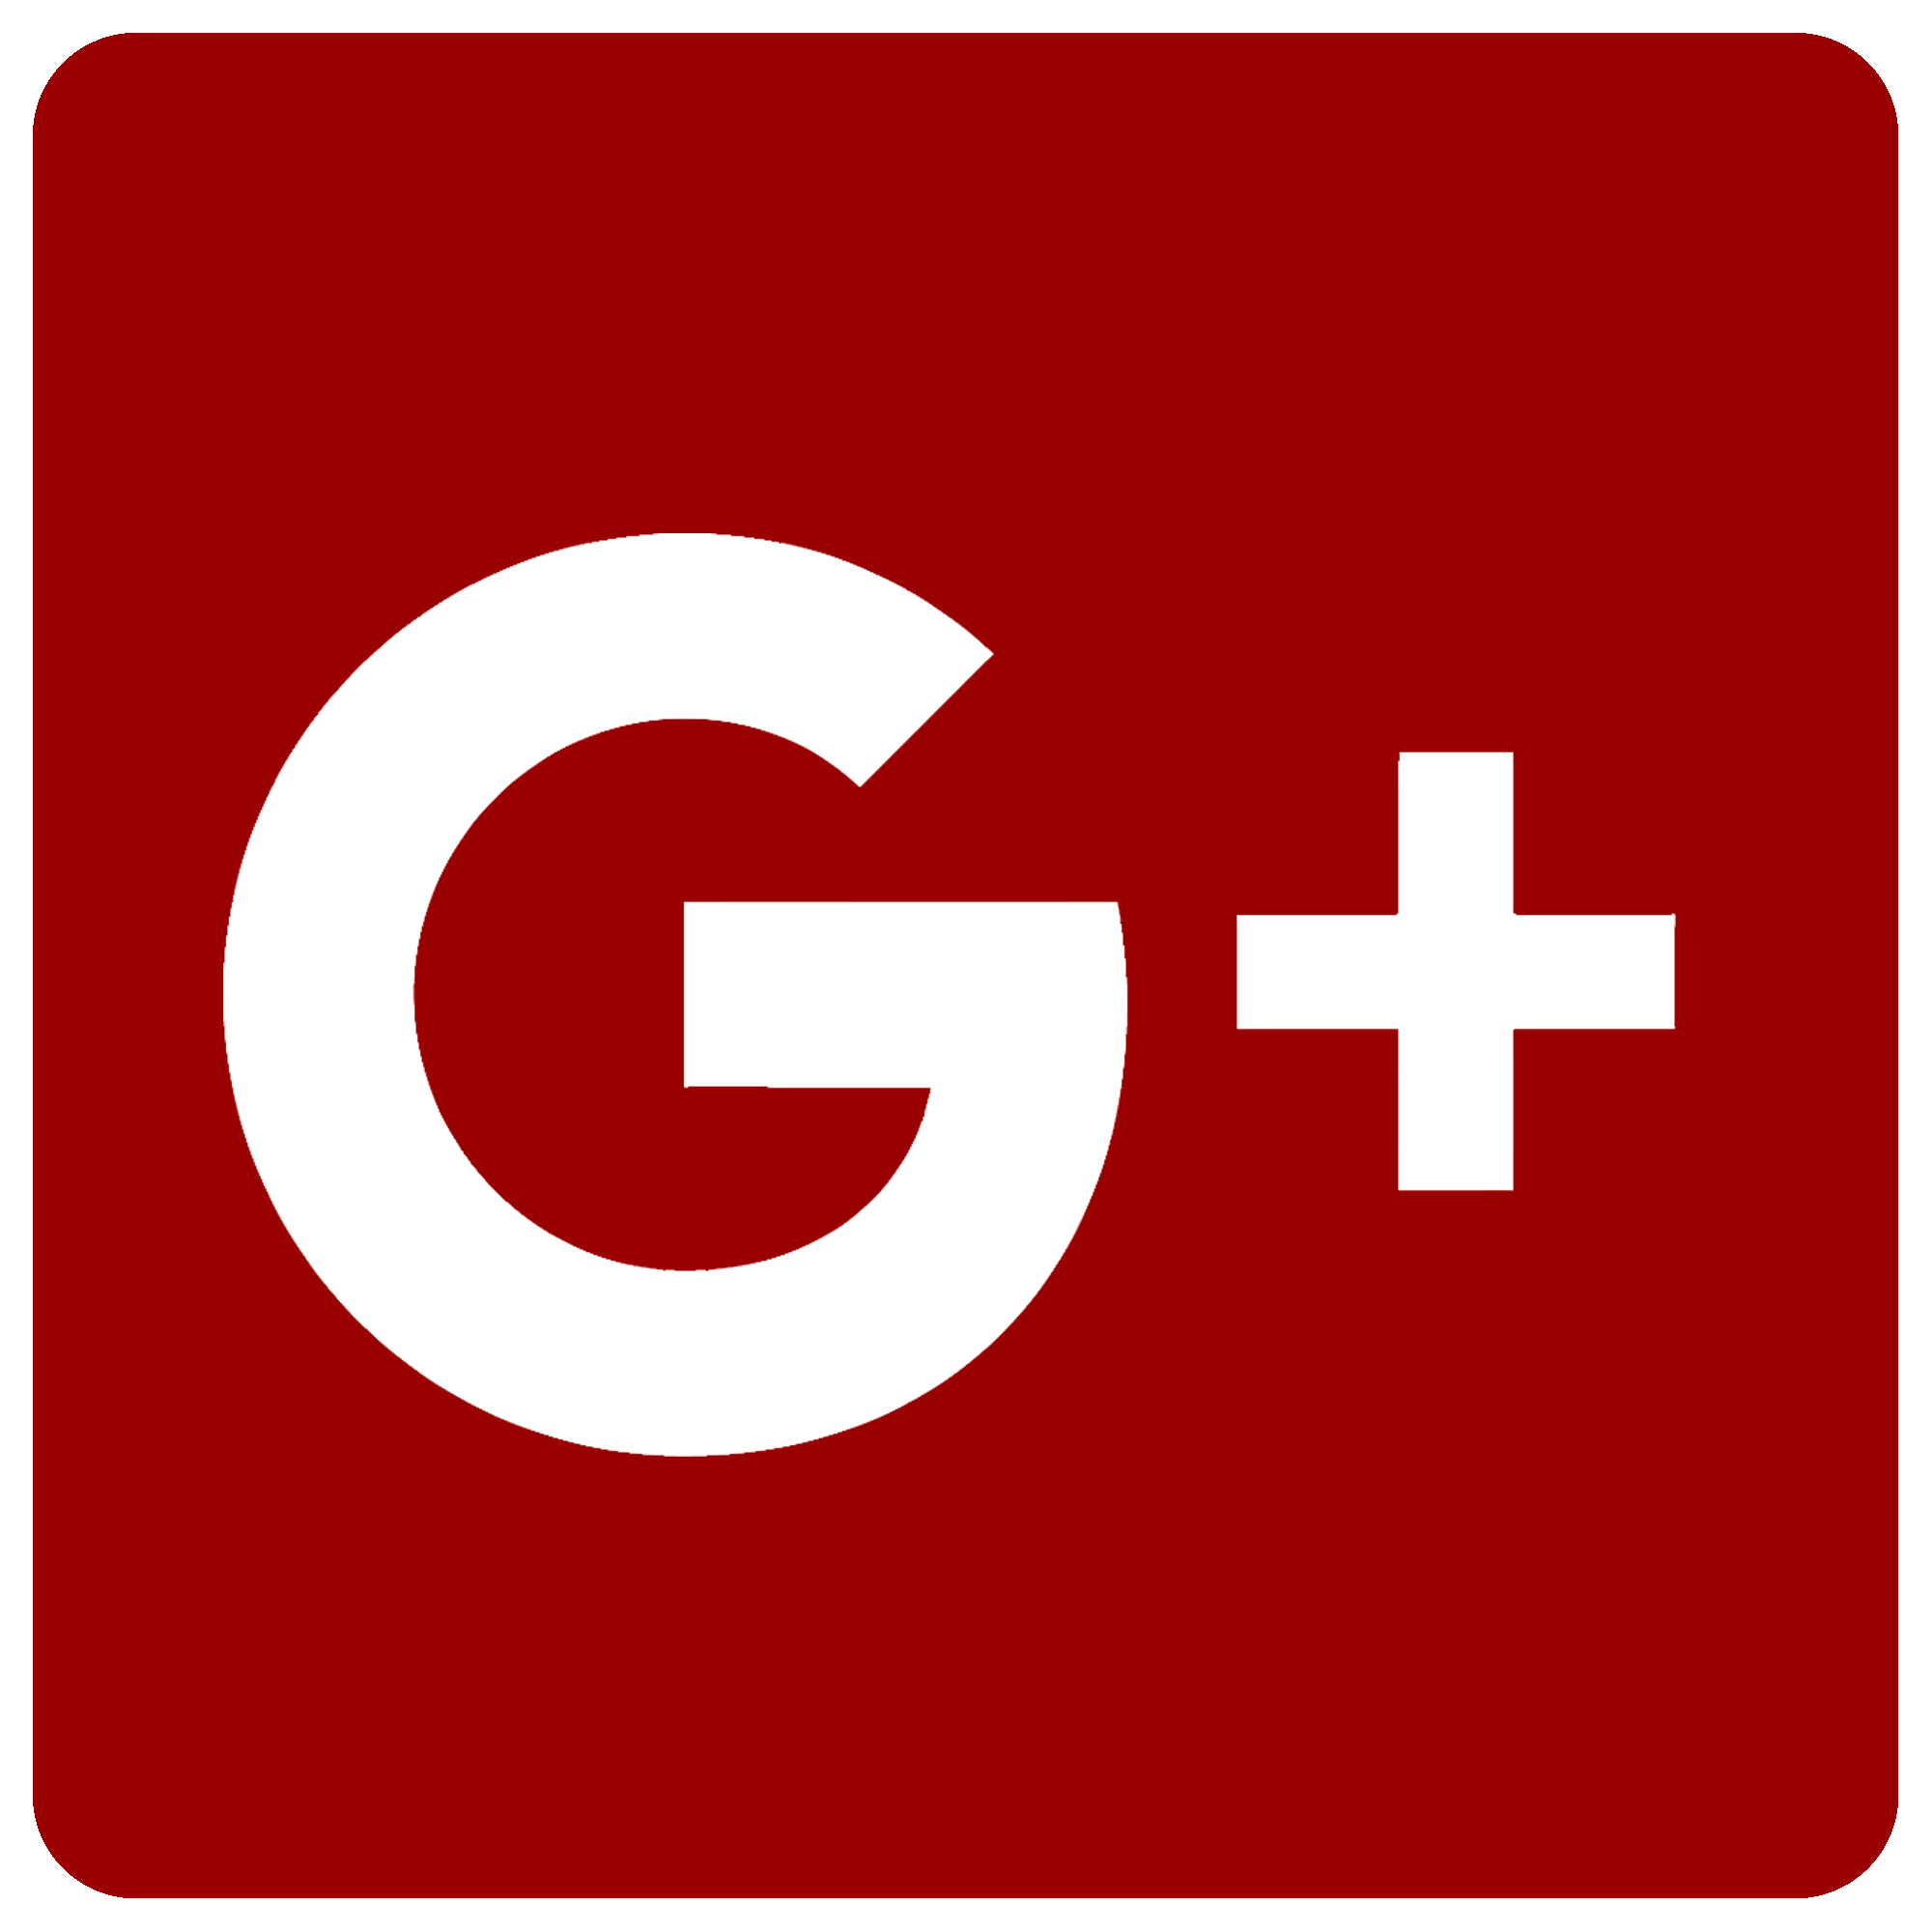 File:GooglePlus-logo-red.png